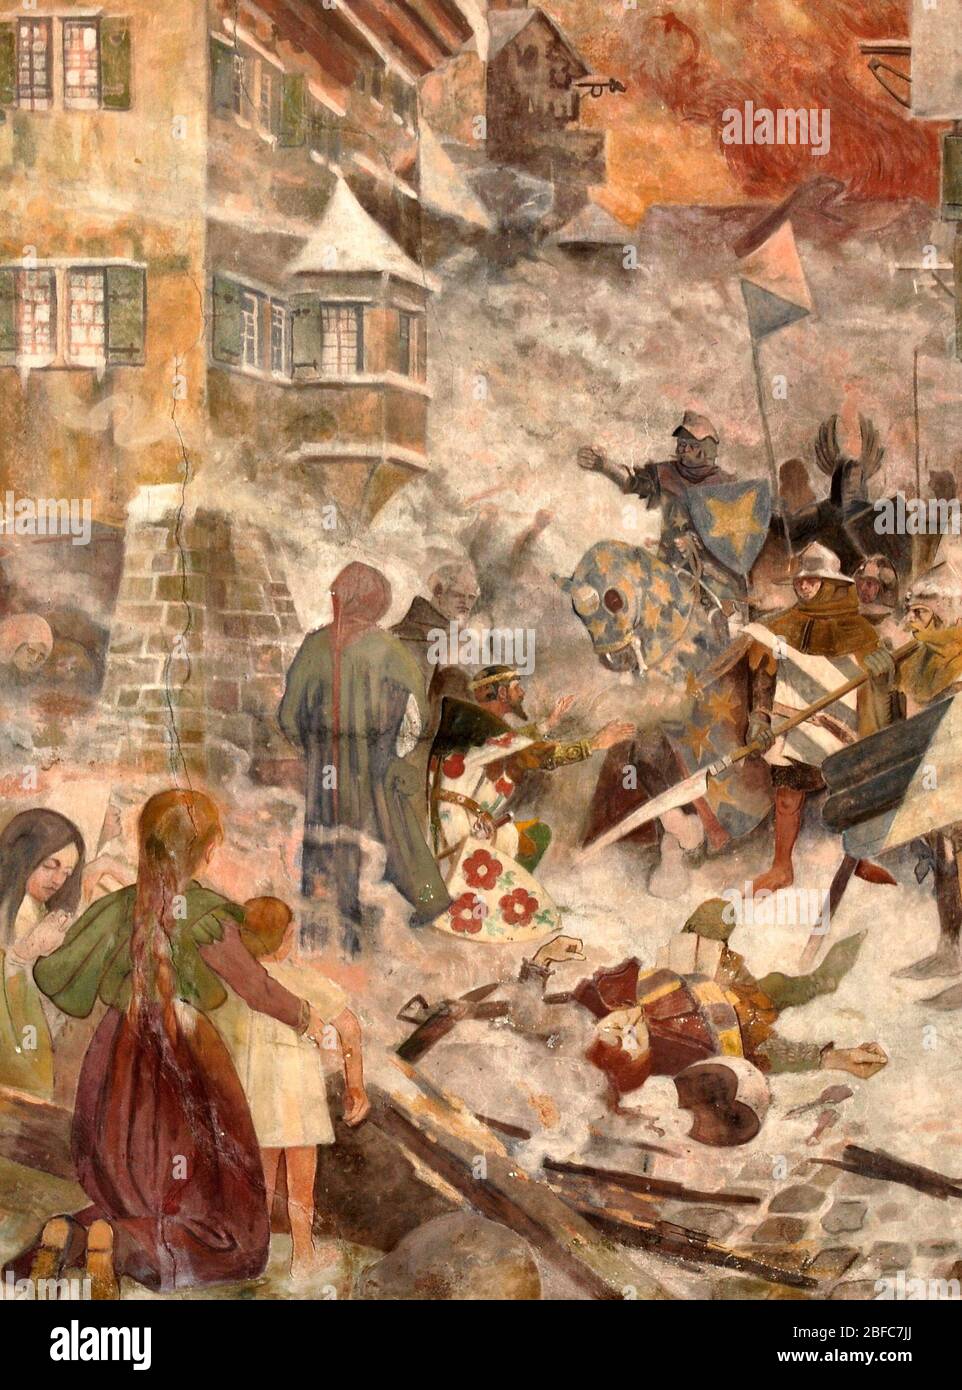 La destrucción de Rapperswil en 1350 (pintura mural) - Gustav Adolf Closs Foto de stock